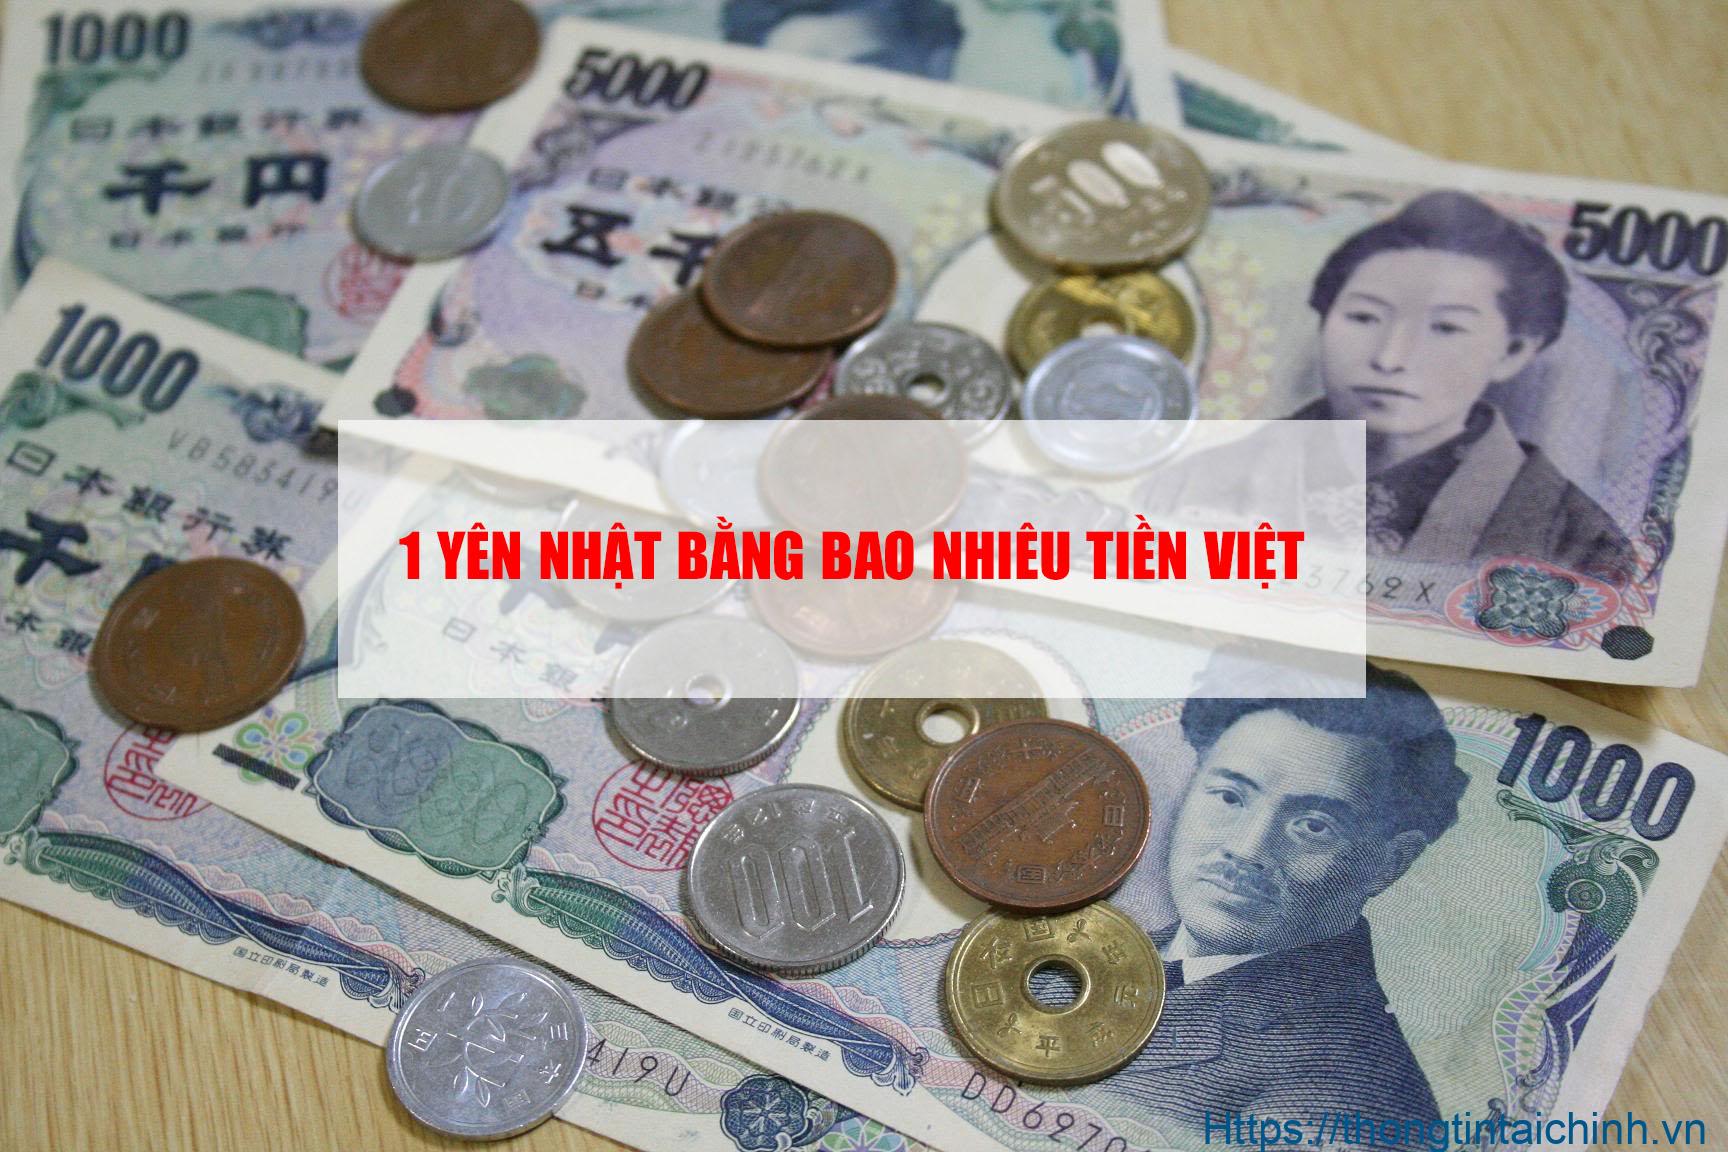 1 Yên Nhật bằng bao nhiêu VNĐ? 